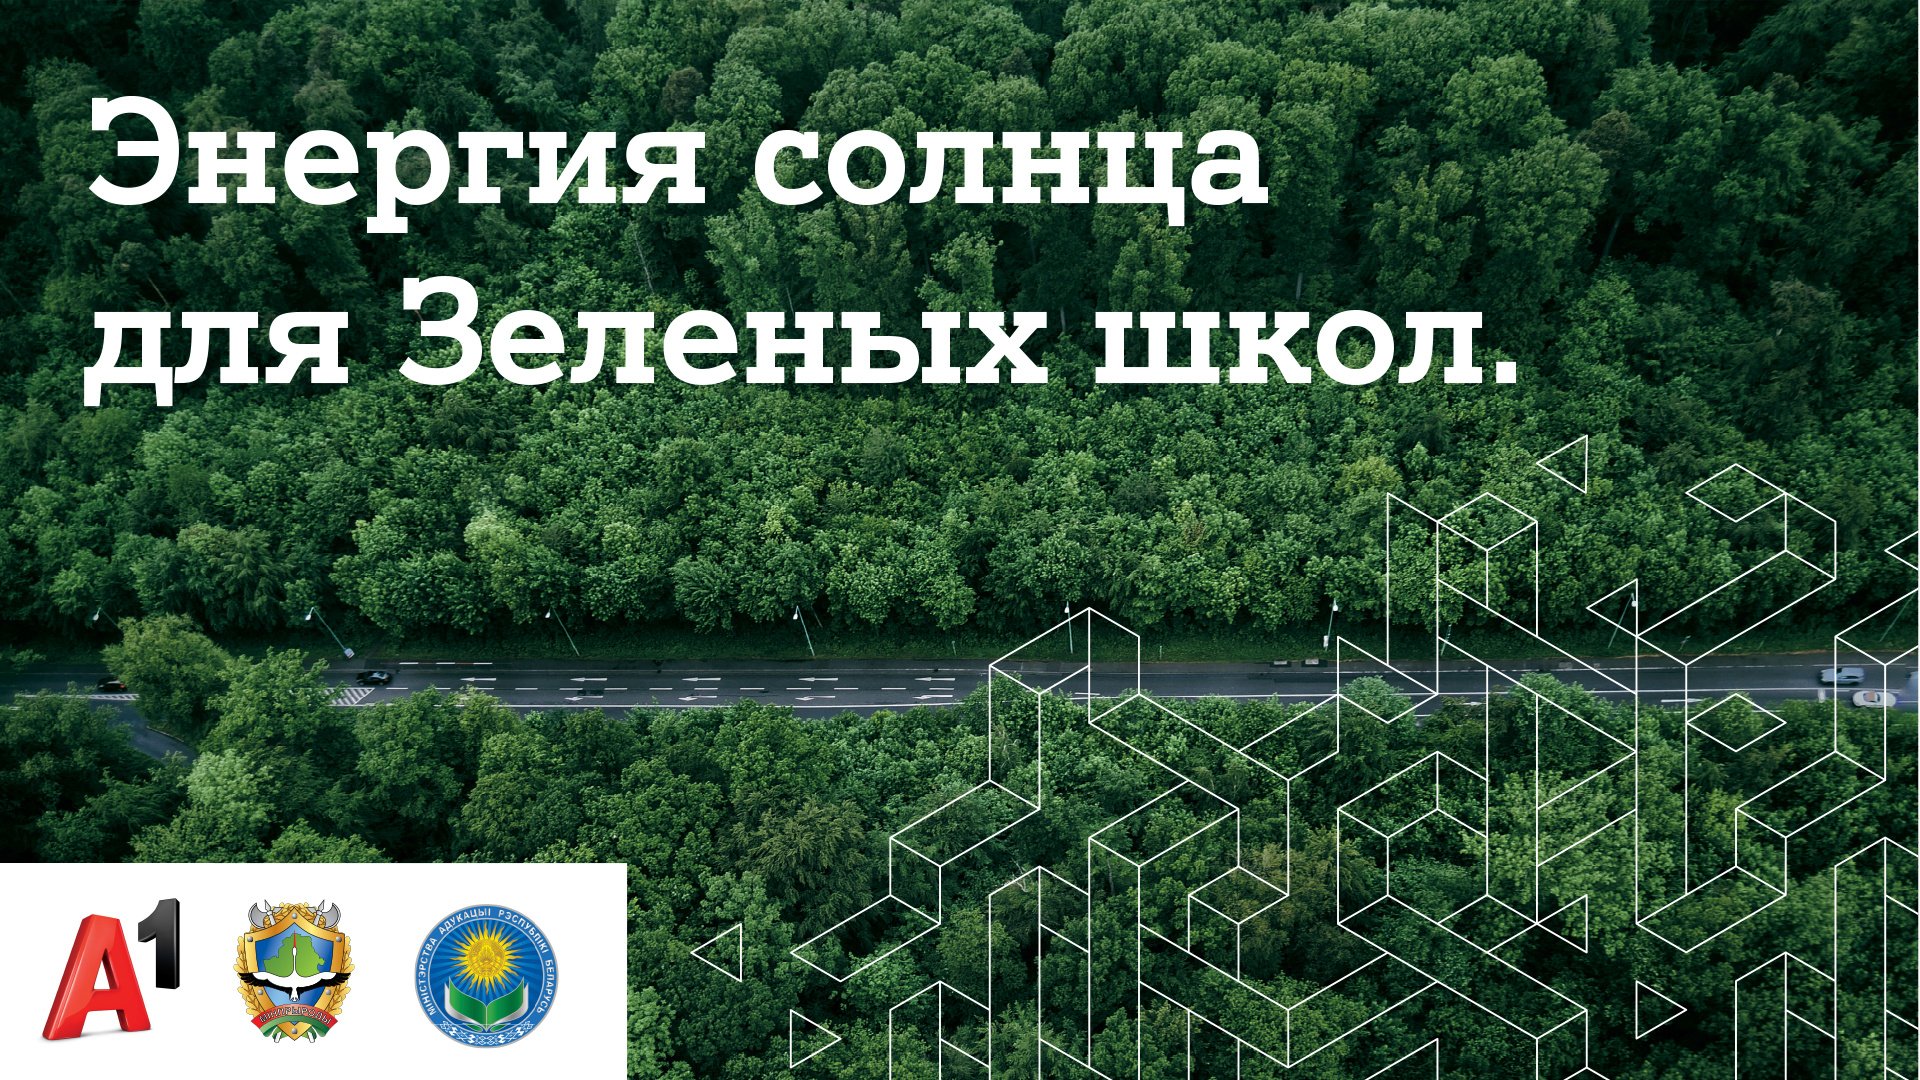 В Гомельской области выберут "Зеленую школу" для установки солнечных панелей от А1